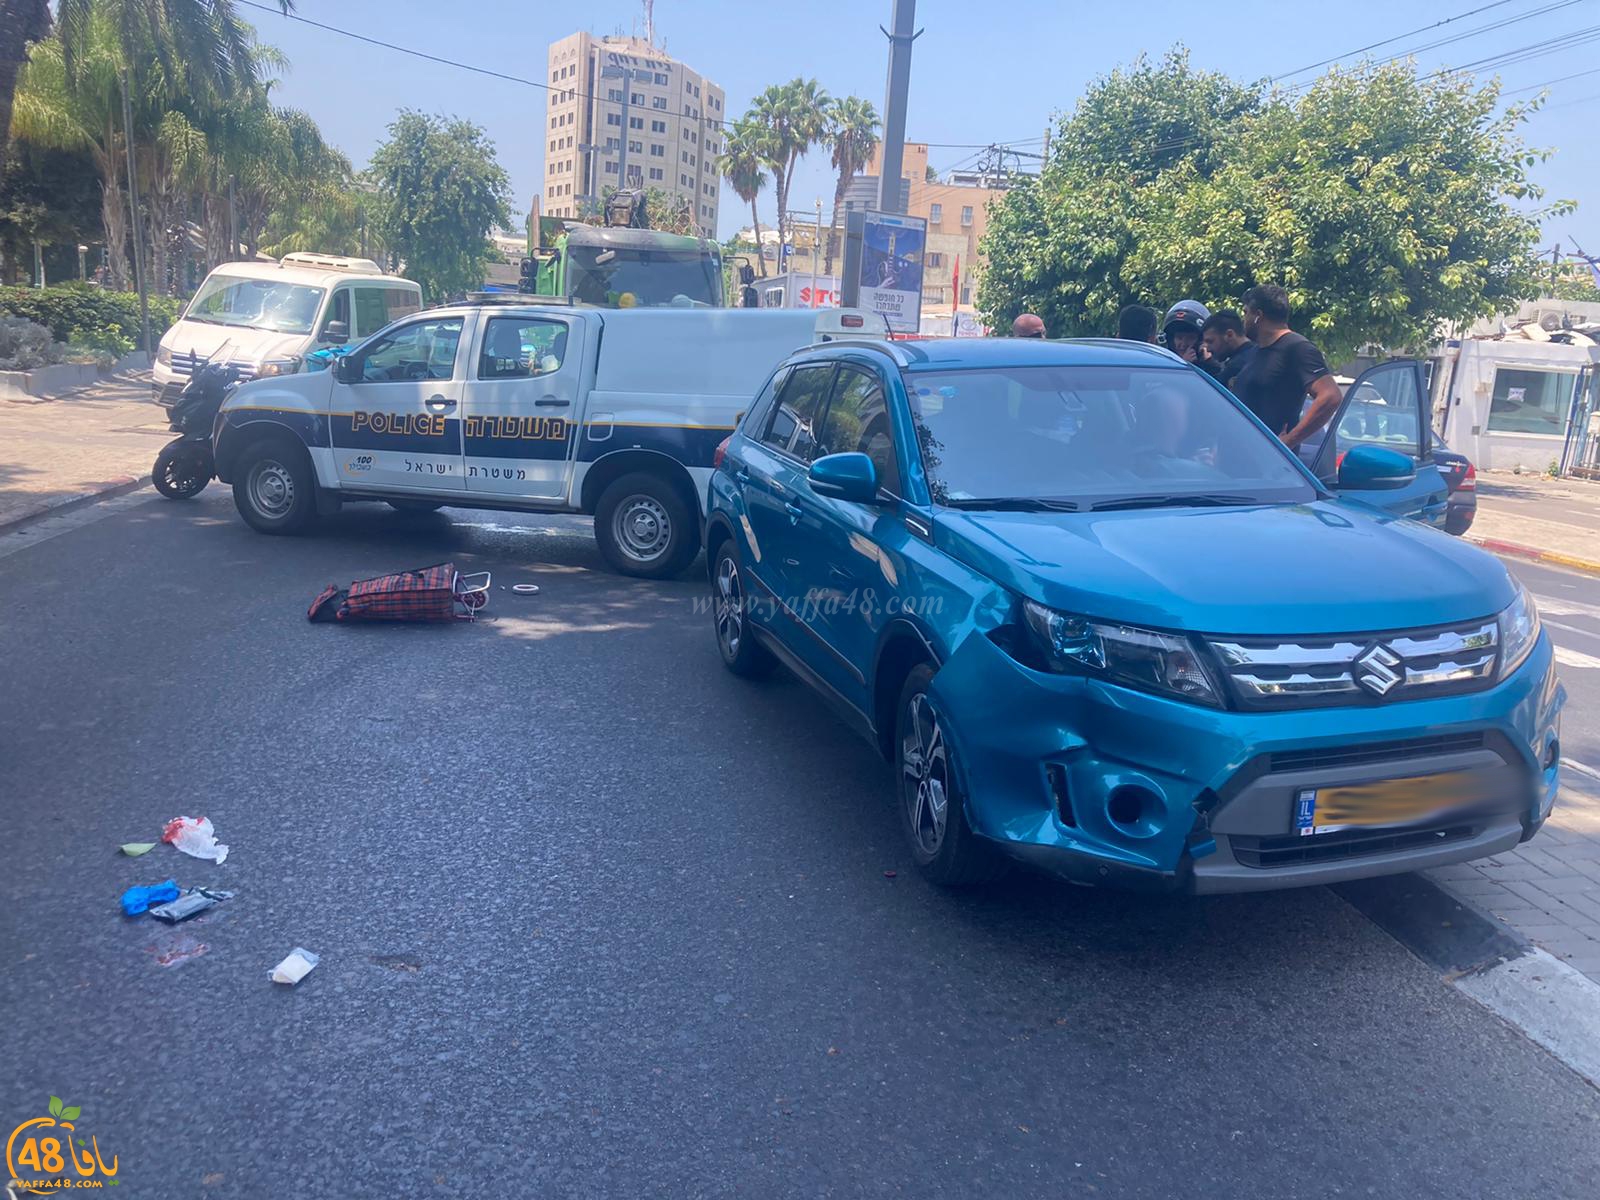 يافا: اصابة حرجة لمسنّة اثر تعرضها لحادث دهس 